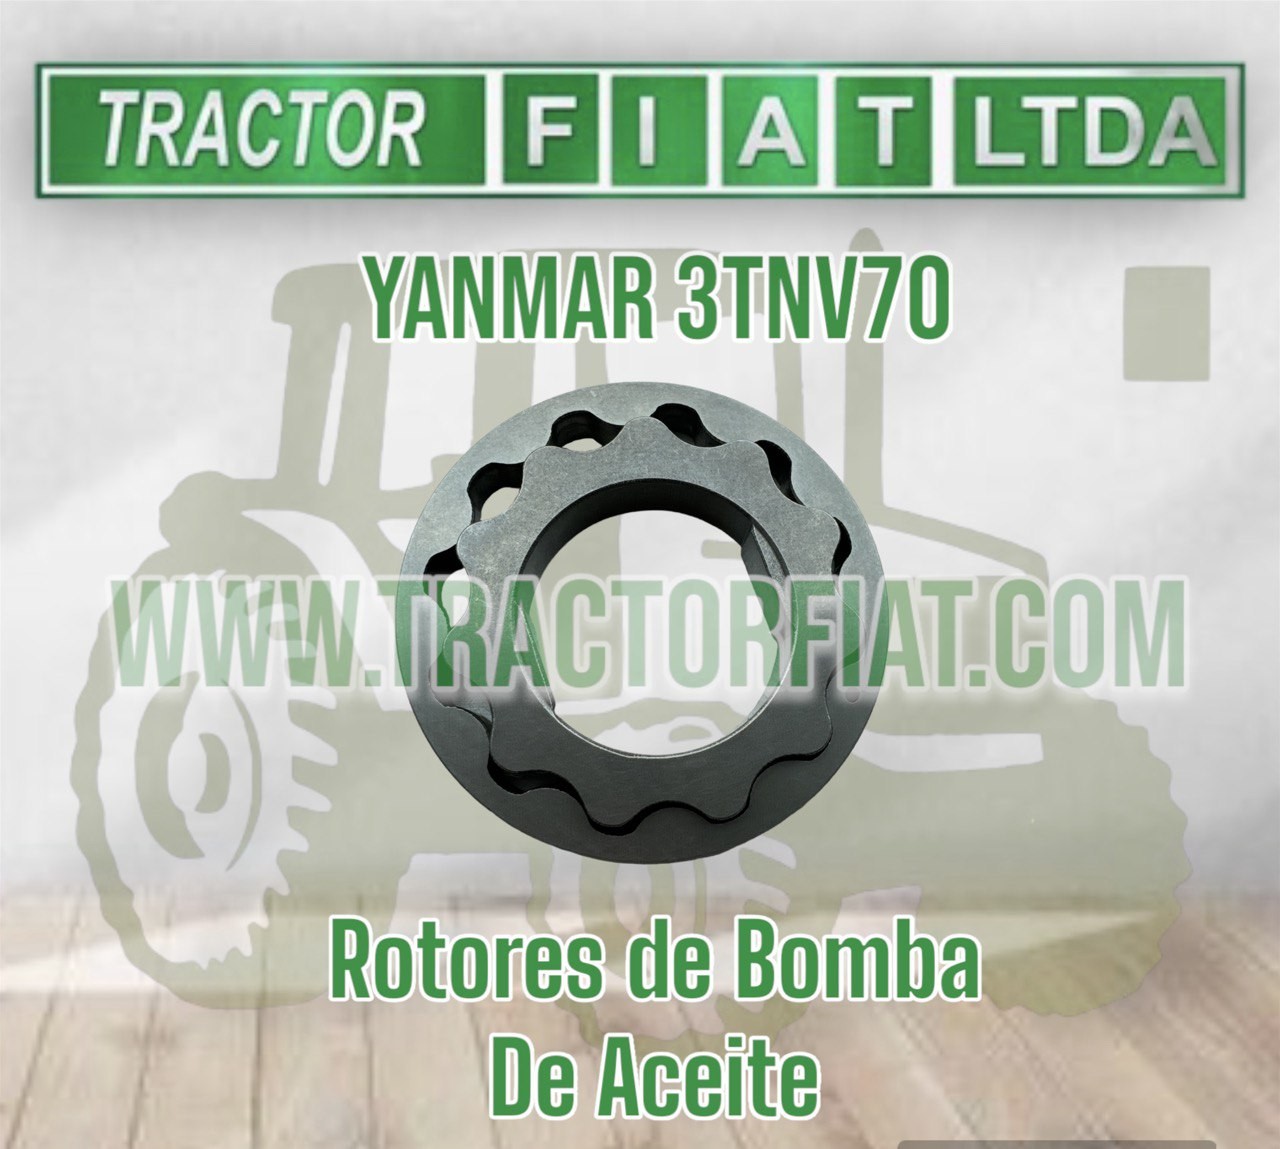 ROTORES DE BOMBA DE ACEITE -MOTOR YANMAR 3TNV70